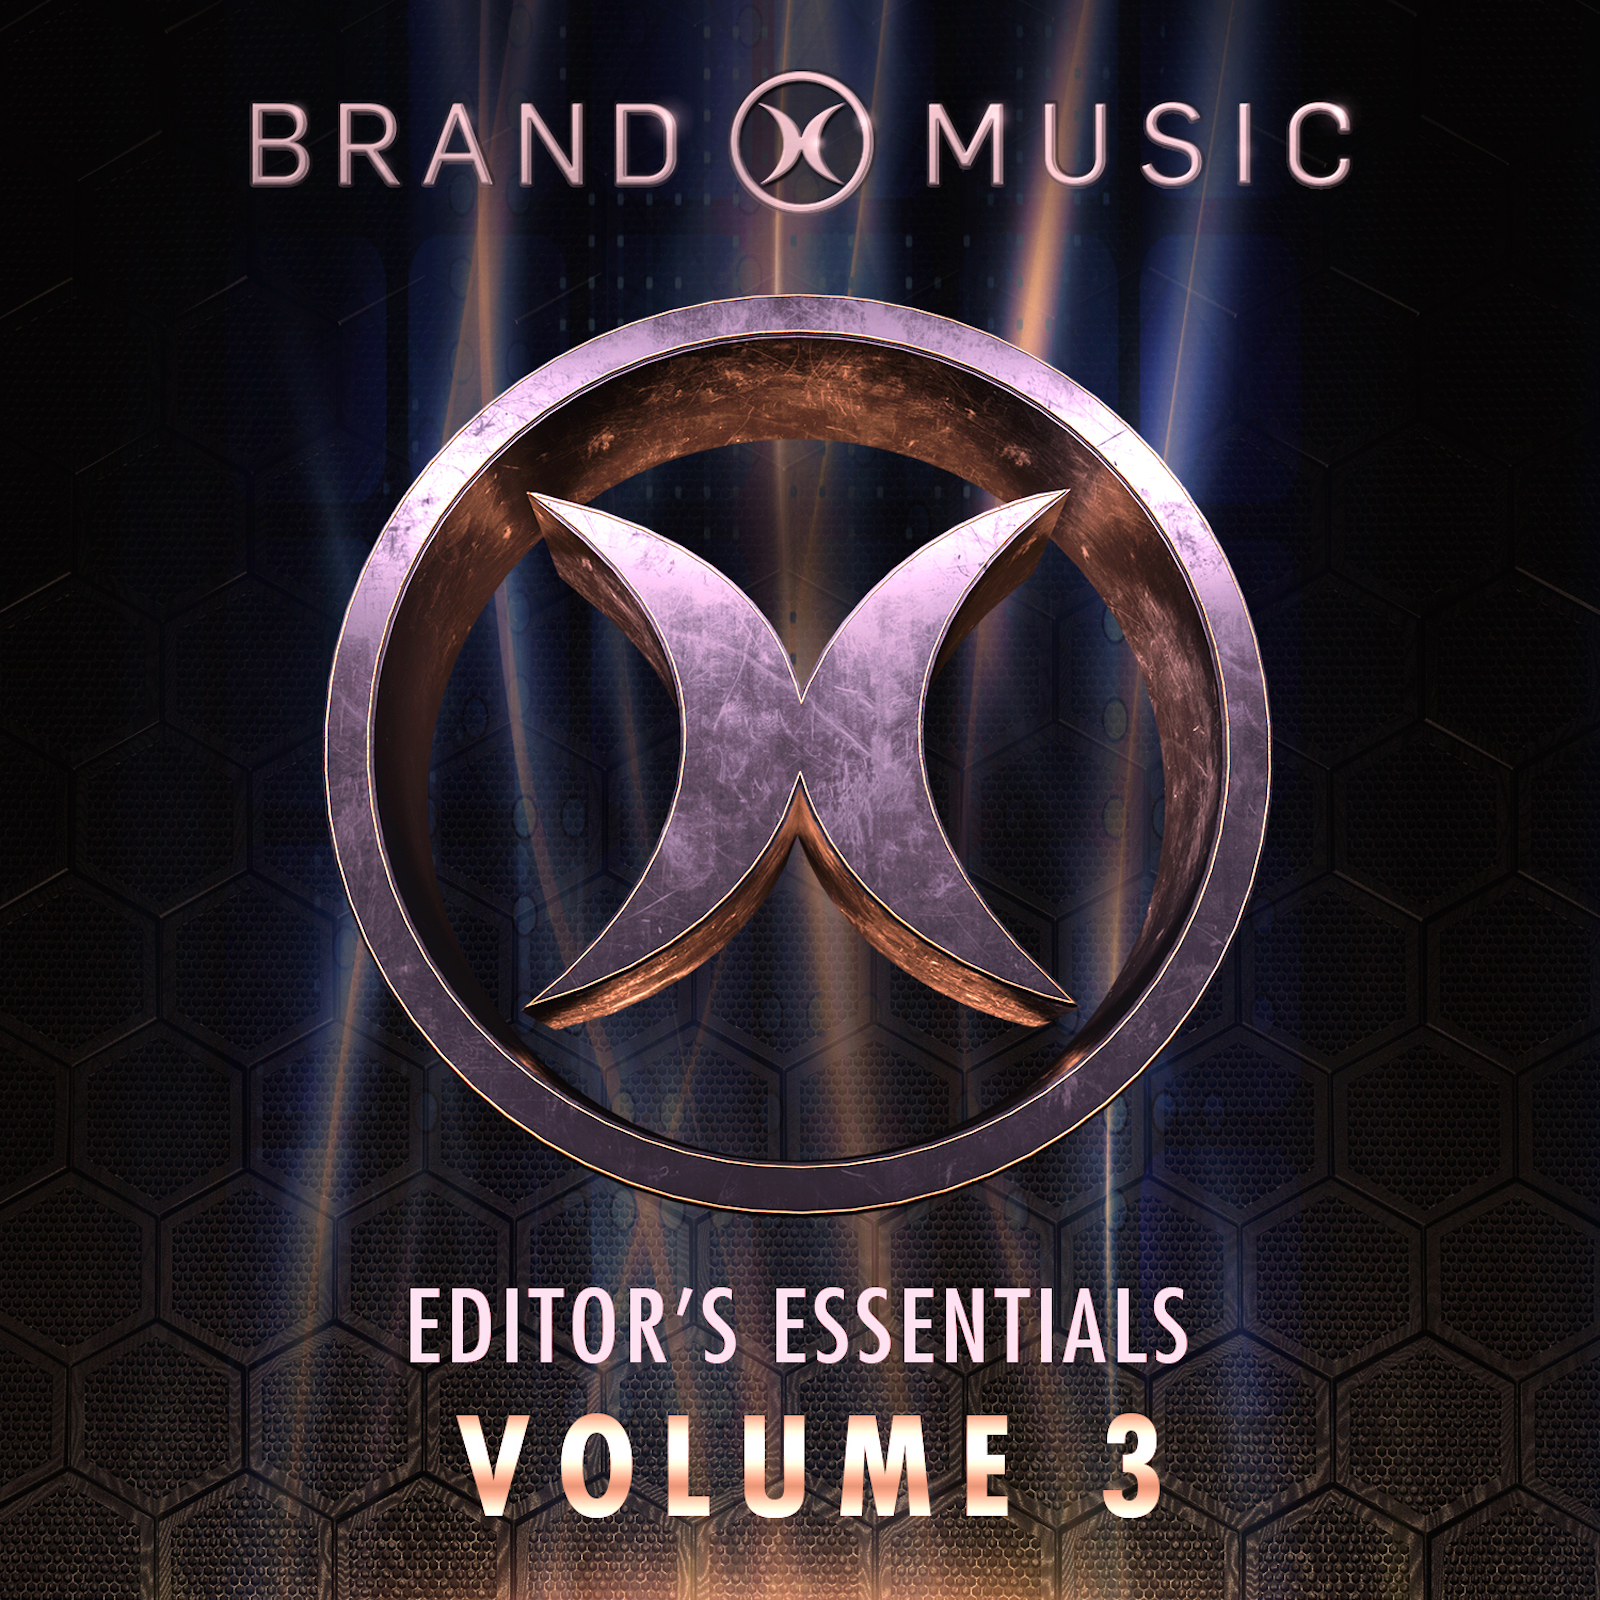 Editors Essentials Volume 3